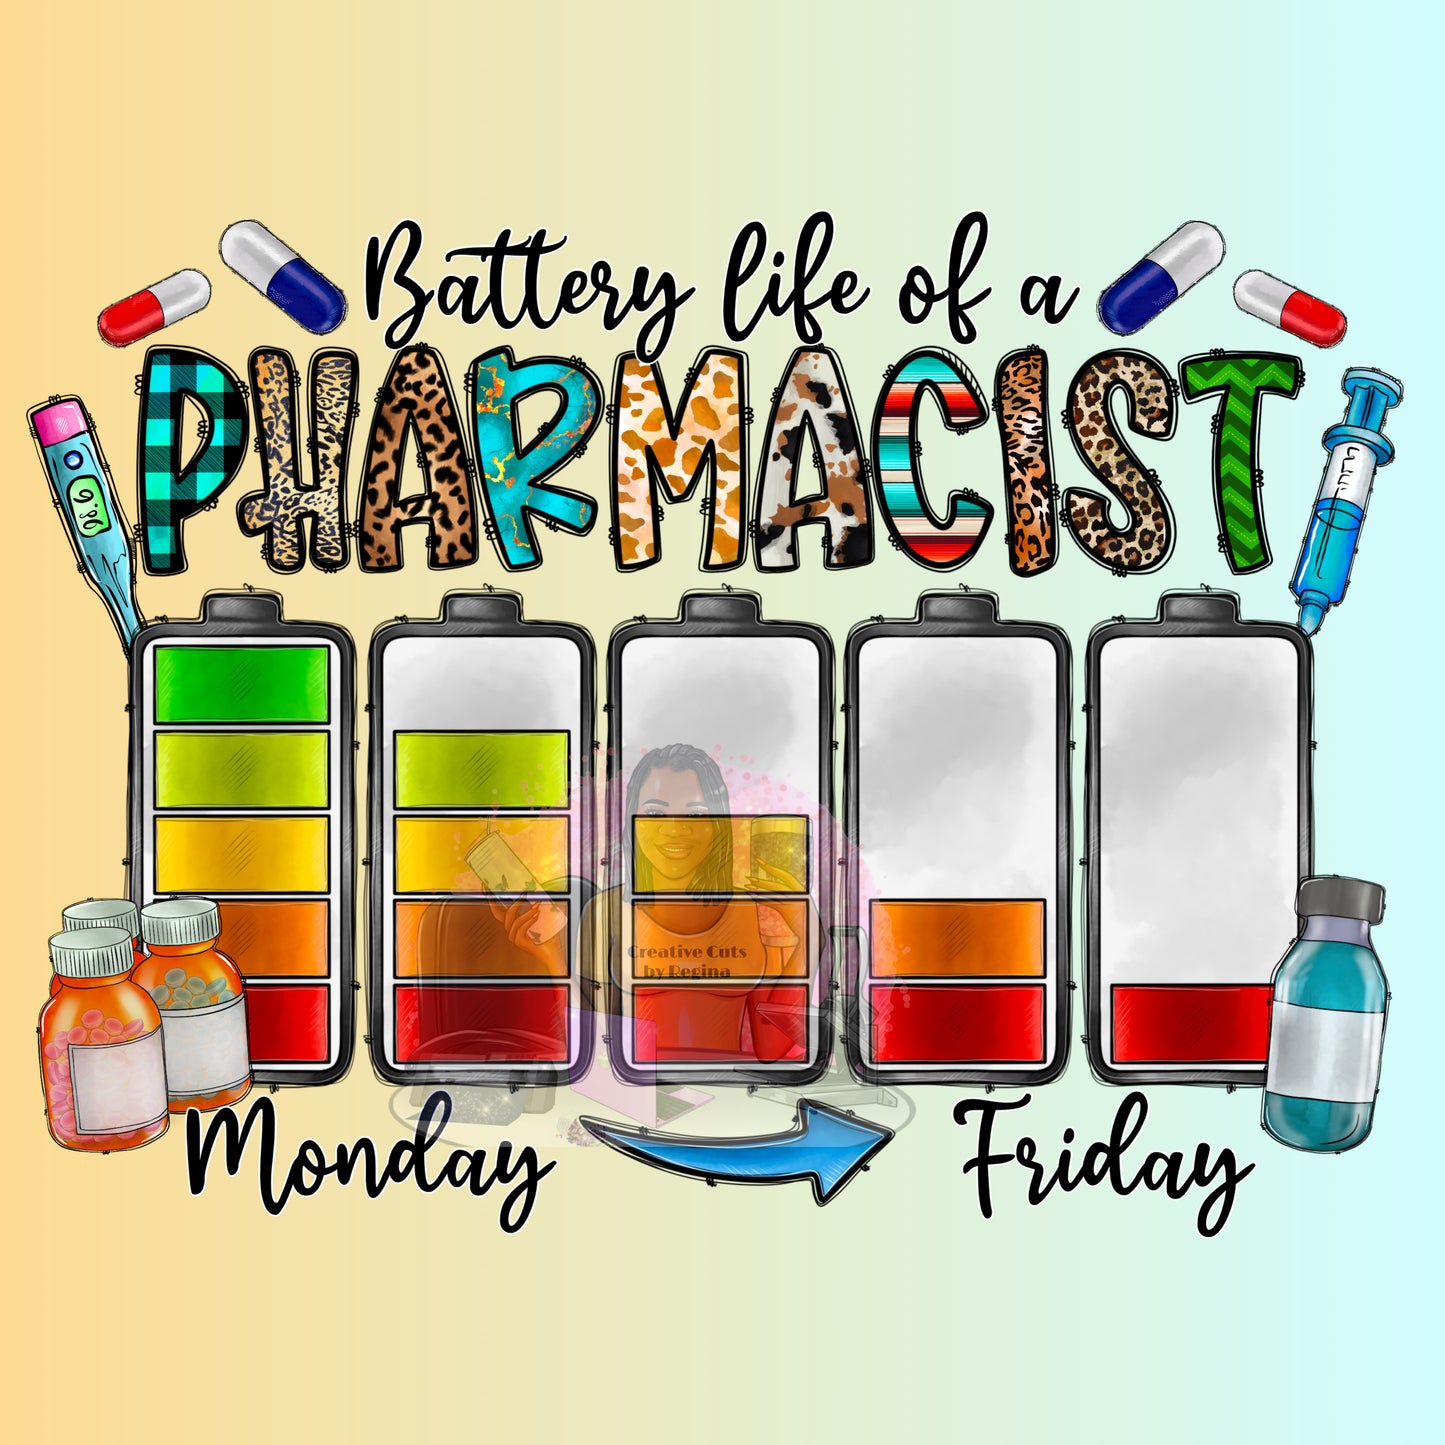 Pharmacy_batter life